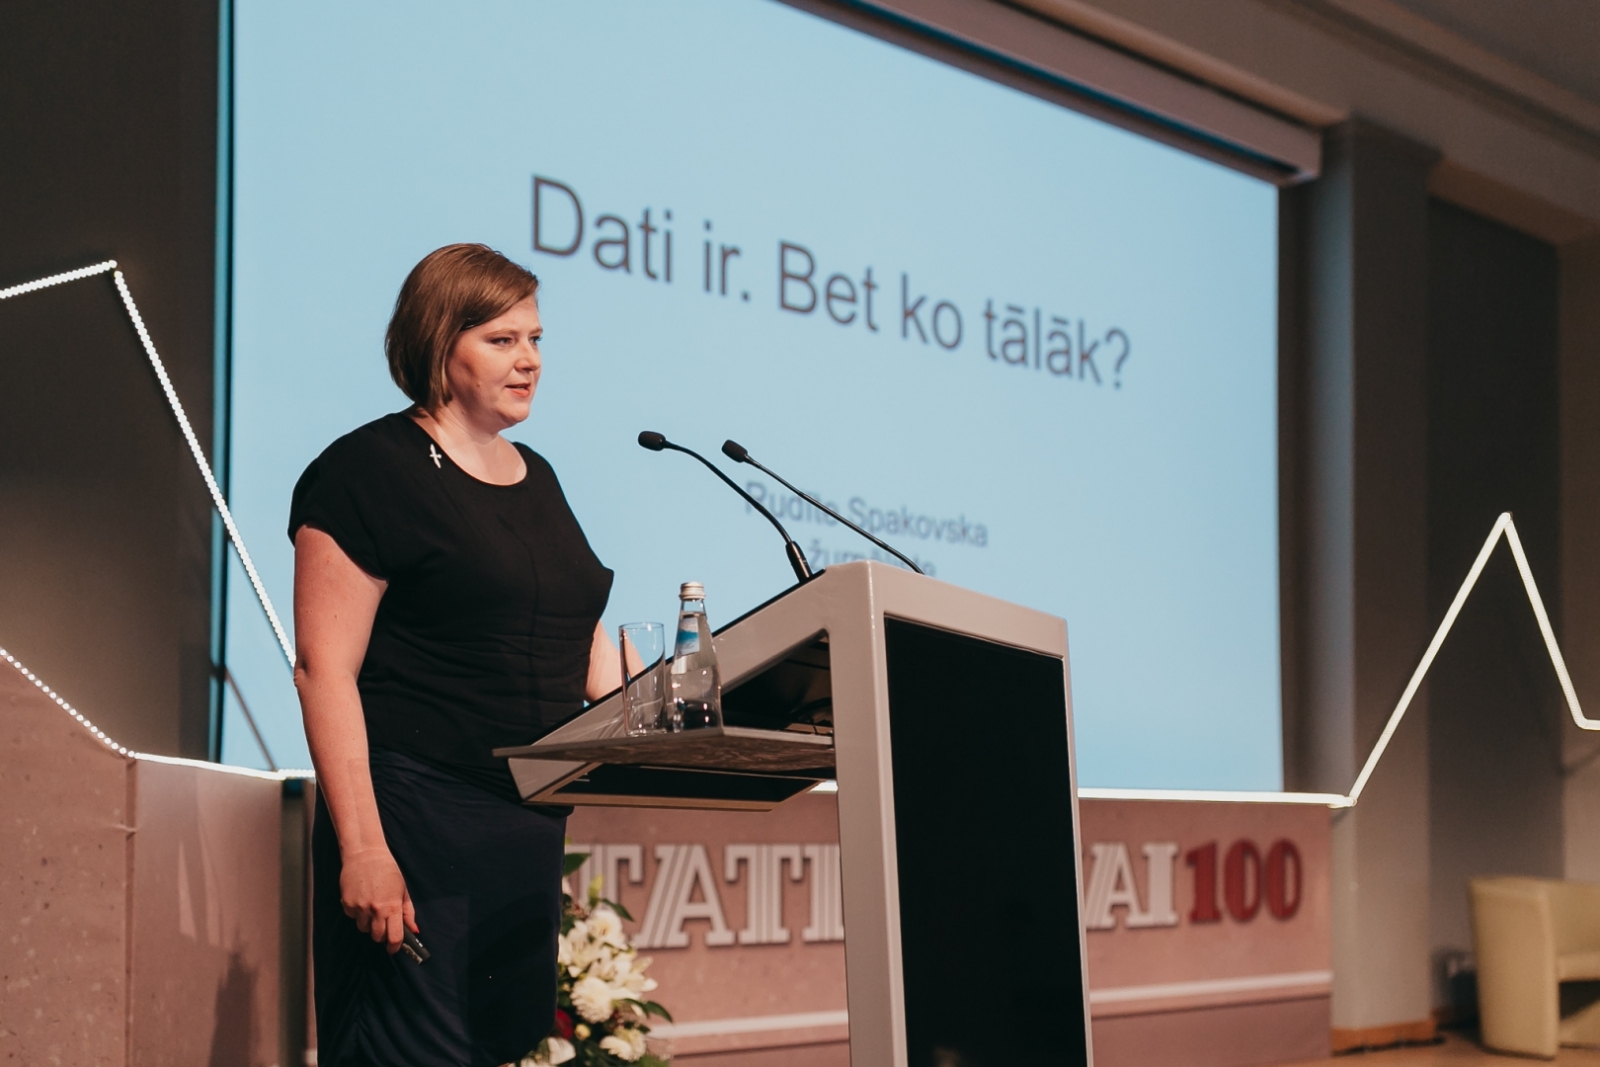 Rudīte Spakovska, Latvijas Televīzijas žurnāliste konferencē "Ar skatu nākotnē – statistika modernai sabiedrībai"